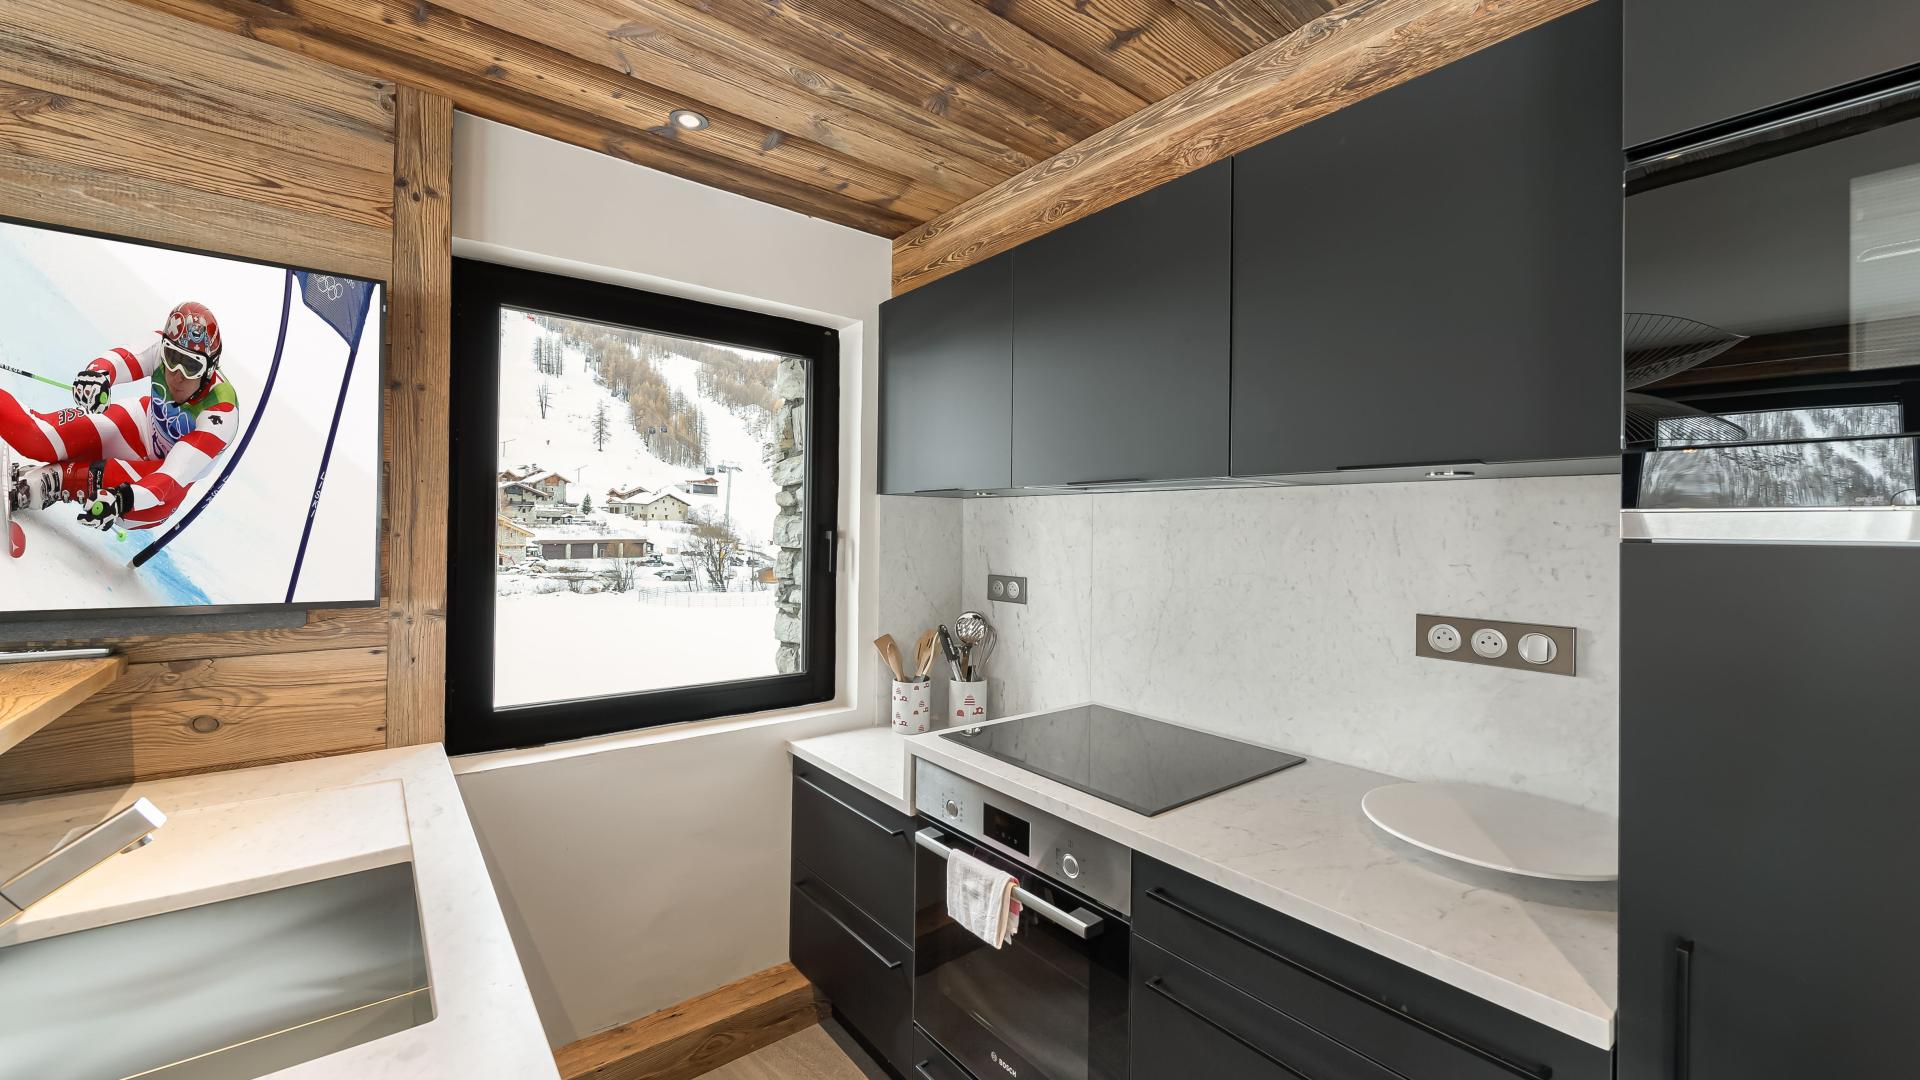 Appartement Flocon 5 - Location chalets Covarel - Val d'Isère Alpes - France - Cuisine